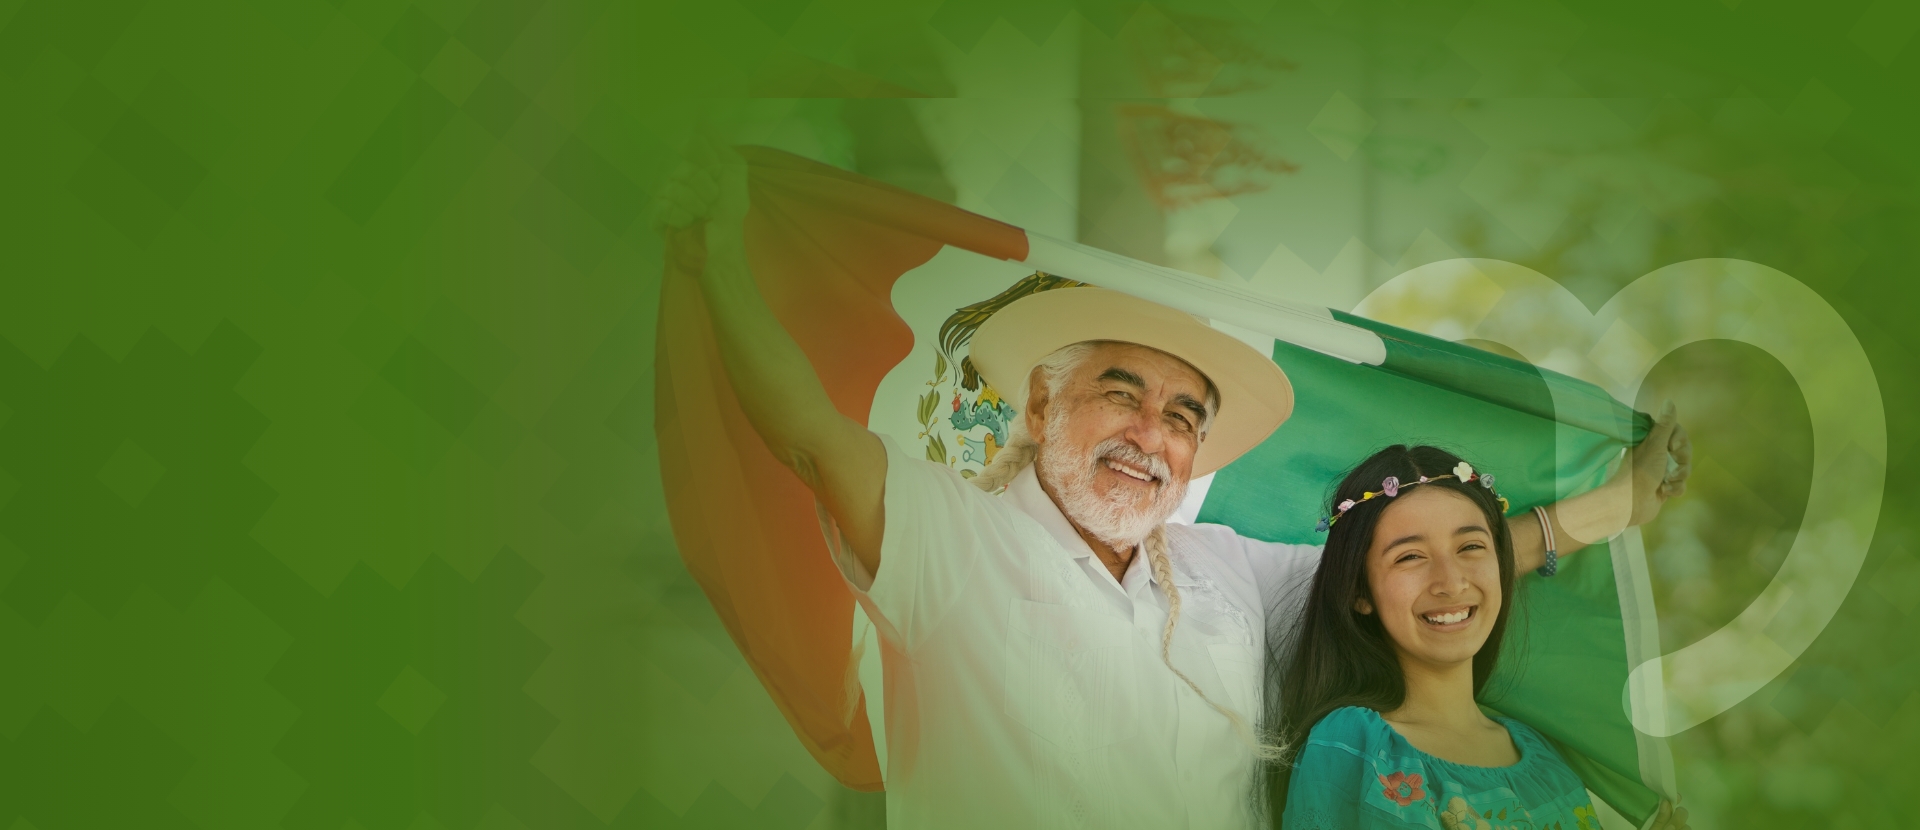 Un señor con cabello largo alzando una bandera de México y una niña con flores en el cabello, 